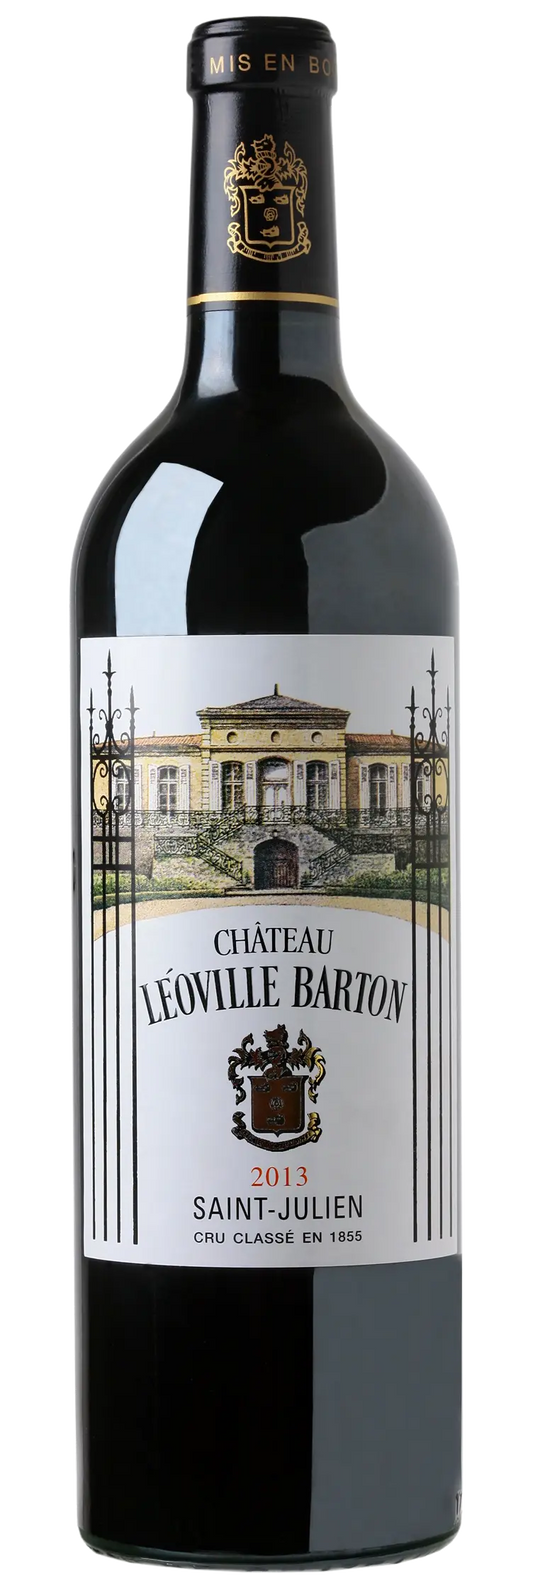 Chateau Leoville Barton 2013 (1x75cl) - TwoMoreGlasses.com